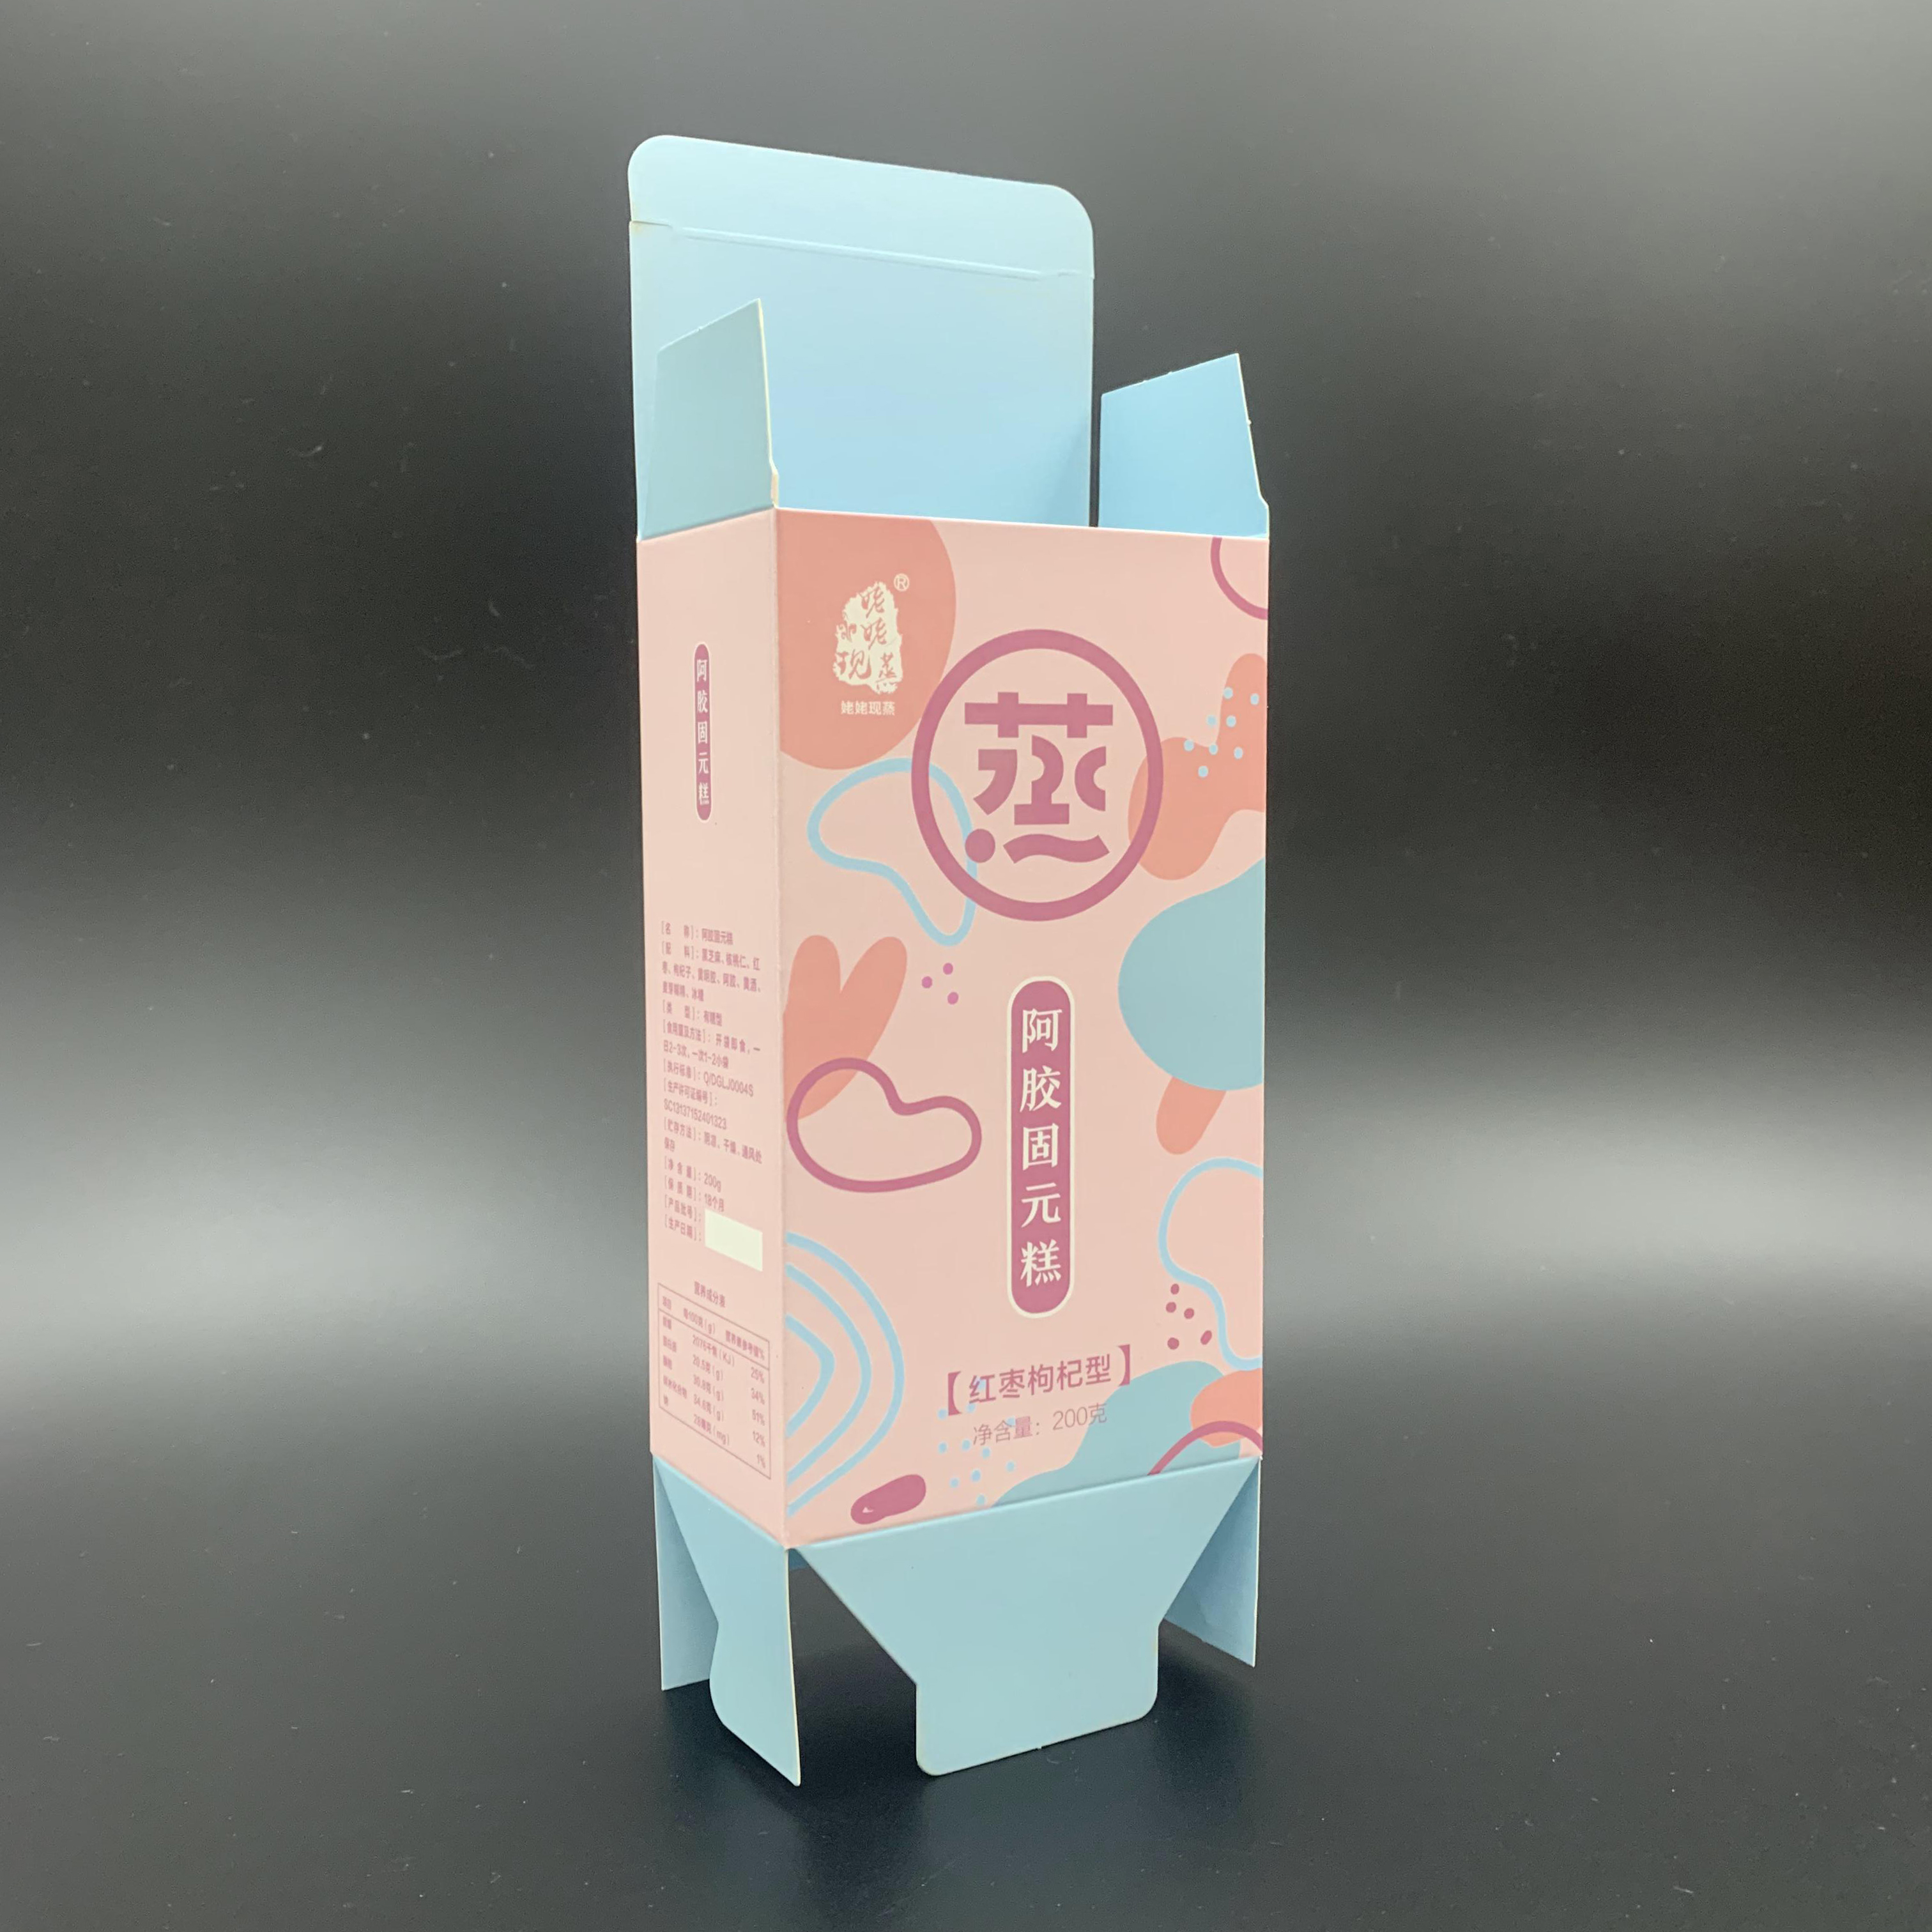 Caja de papel plegable con impresiones personalizadas para sus refrigerios